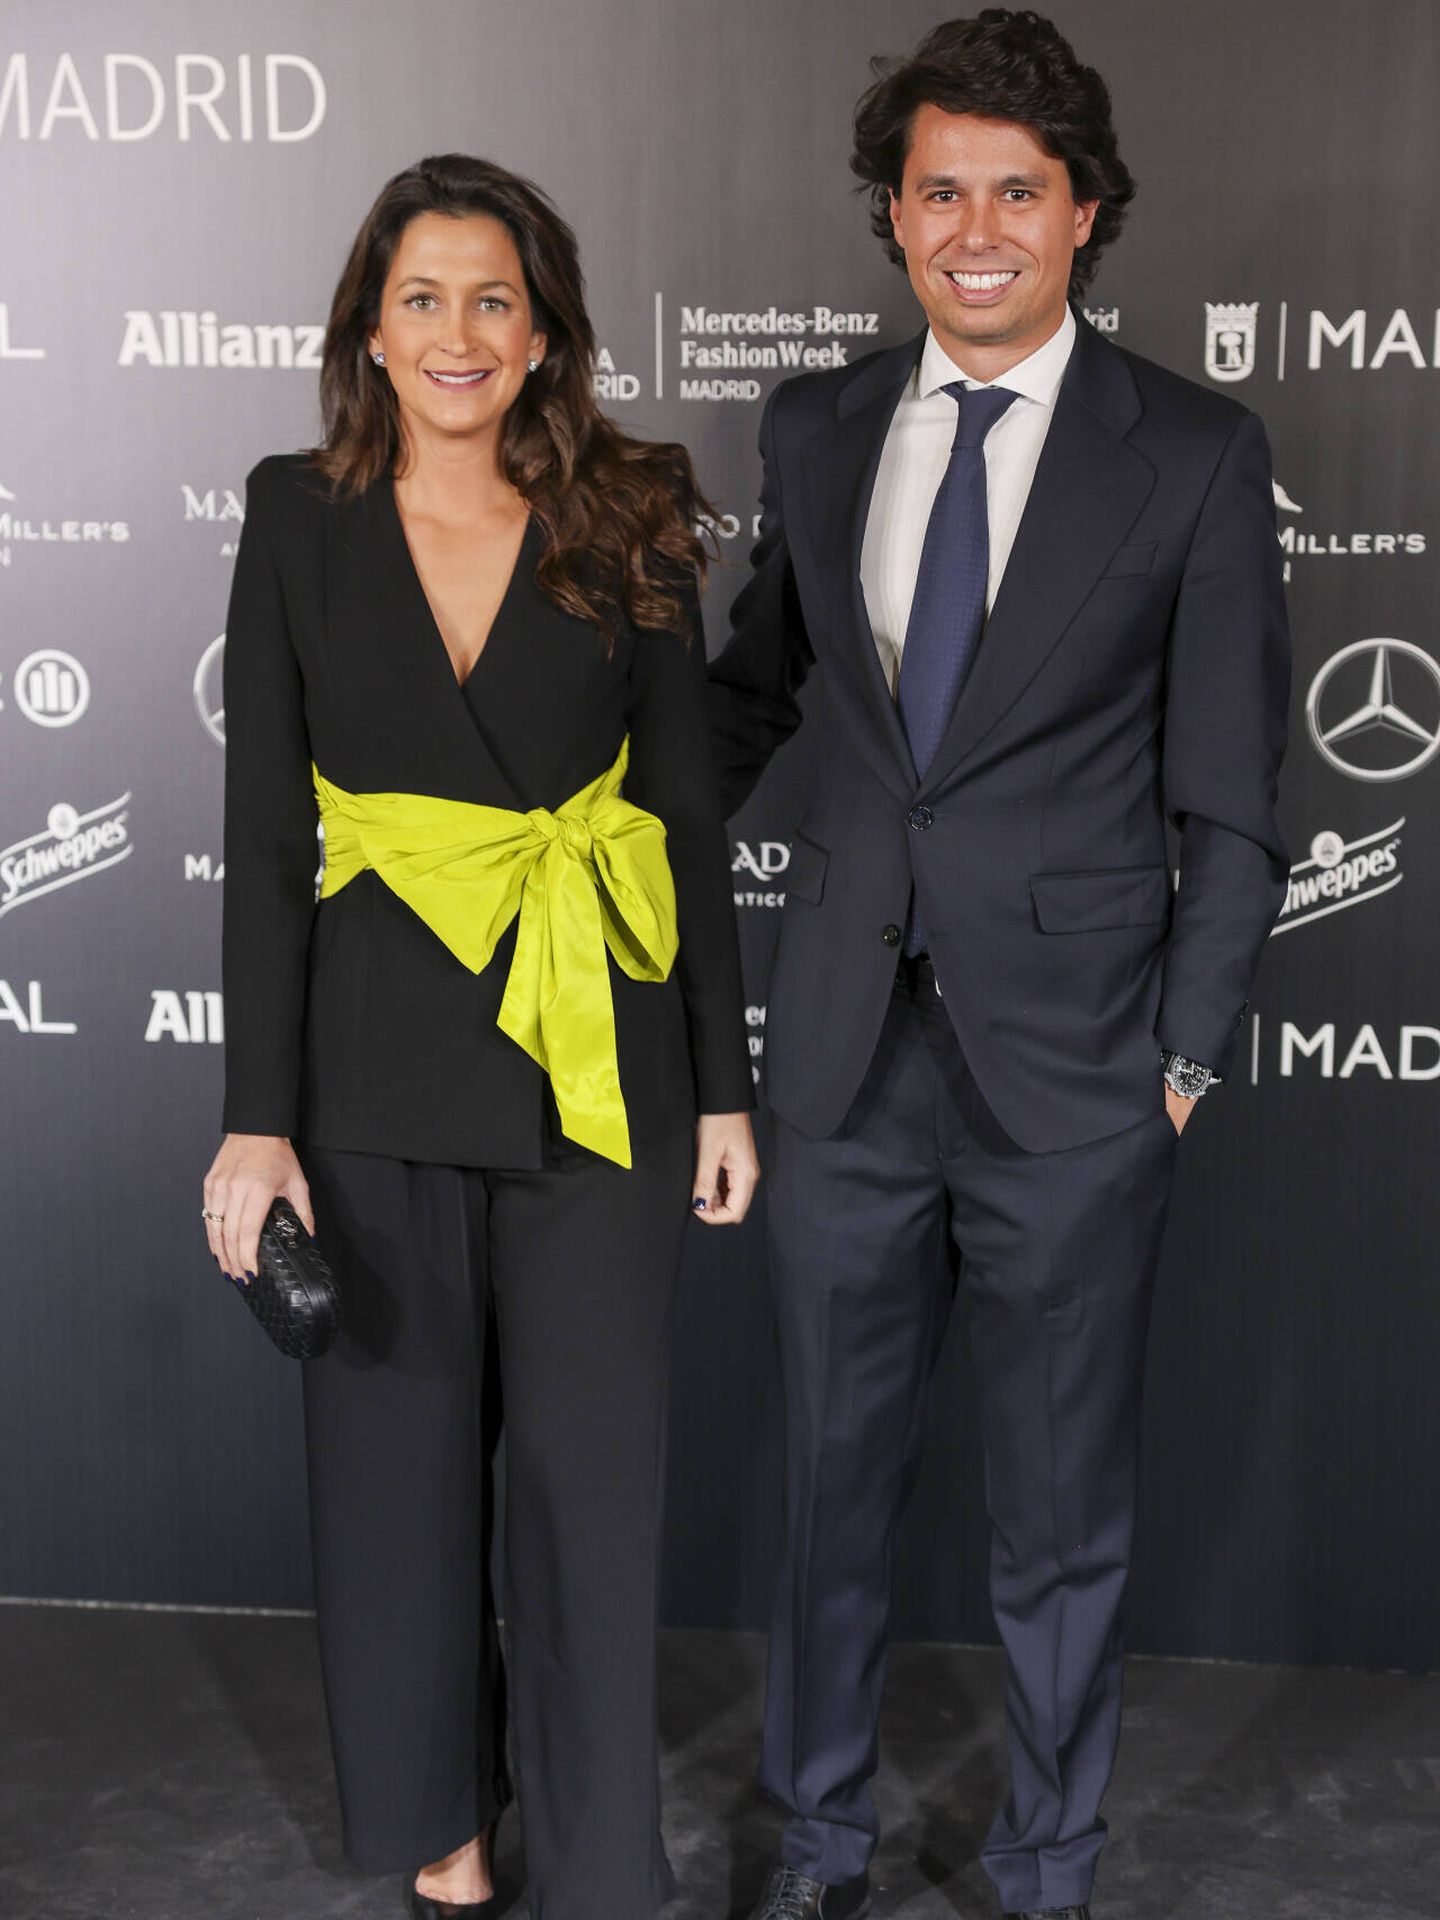 Cristina Fernández y Álvaro Preysler Castillejo en la fiesta de inauguración de la 79ª edición de la MBFWM. (Gtres)